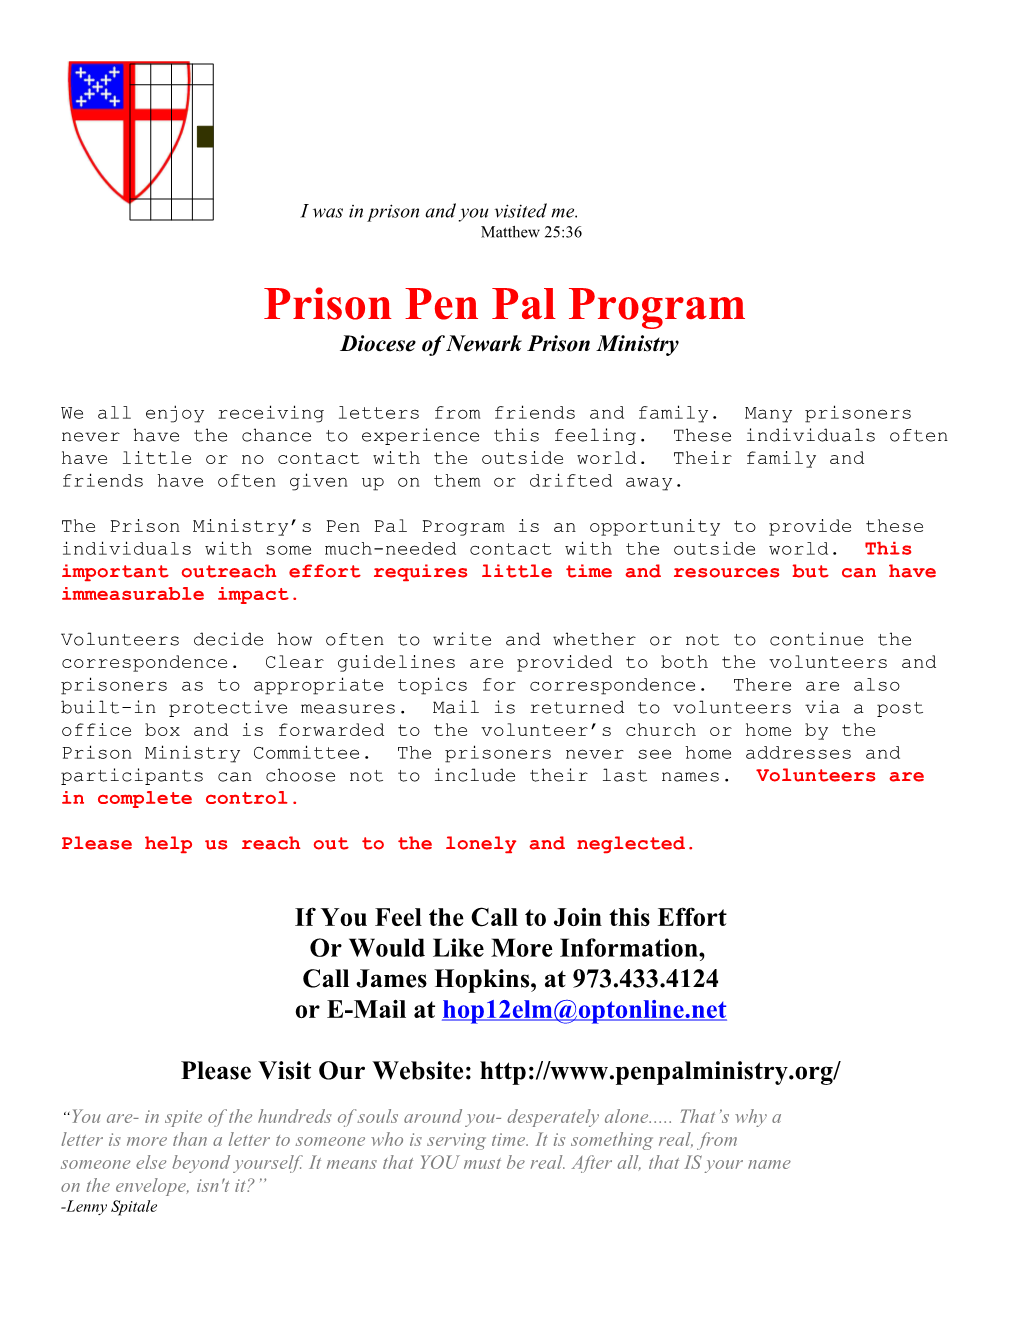 Prison Pen Pal Program